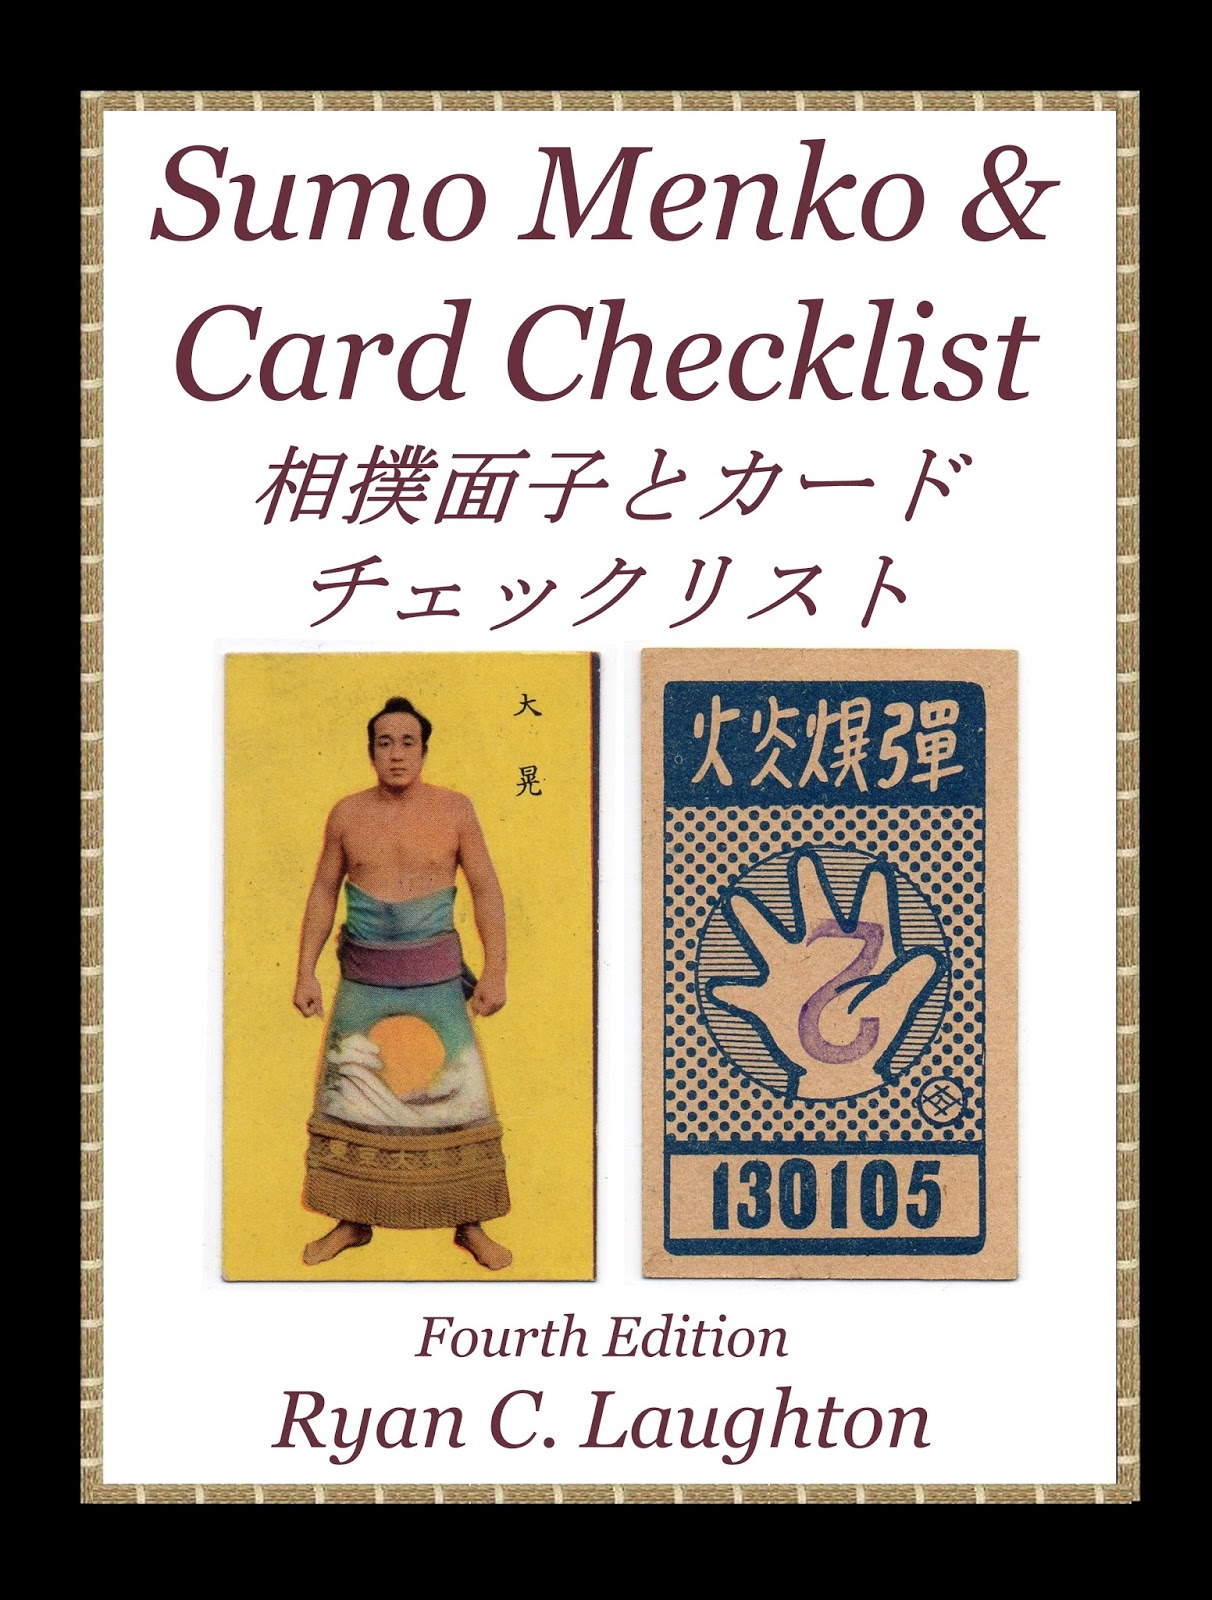 Sumo Menko & Card Checklist